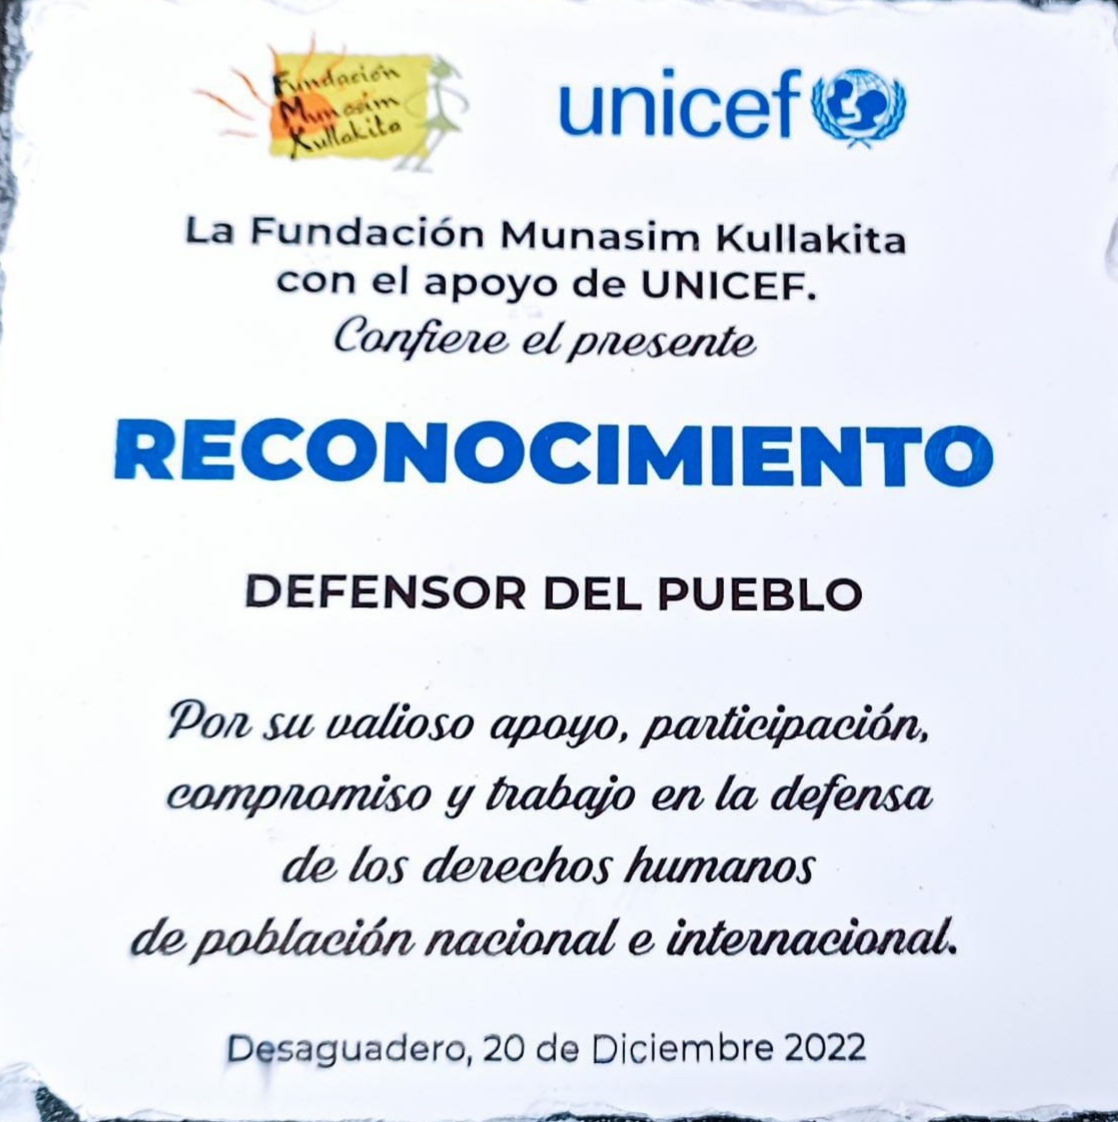 La Fundación Munasim Kullakita otorga un certificado de reconocimiento a la Defensoría del Pueblo por el trabajo a favor de los derechos humanos